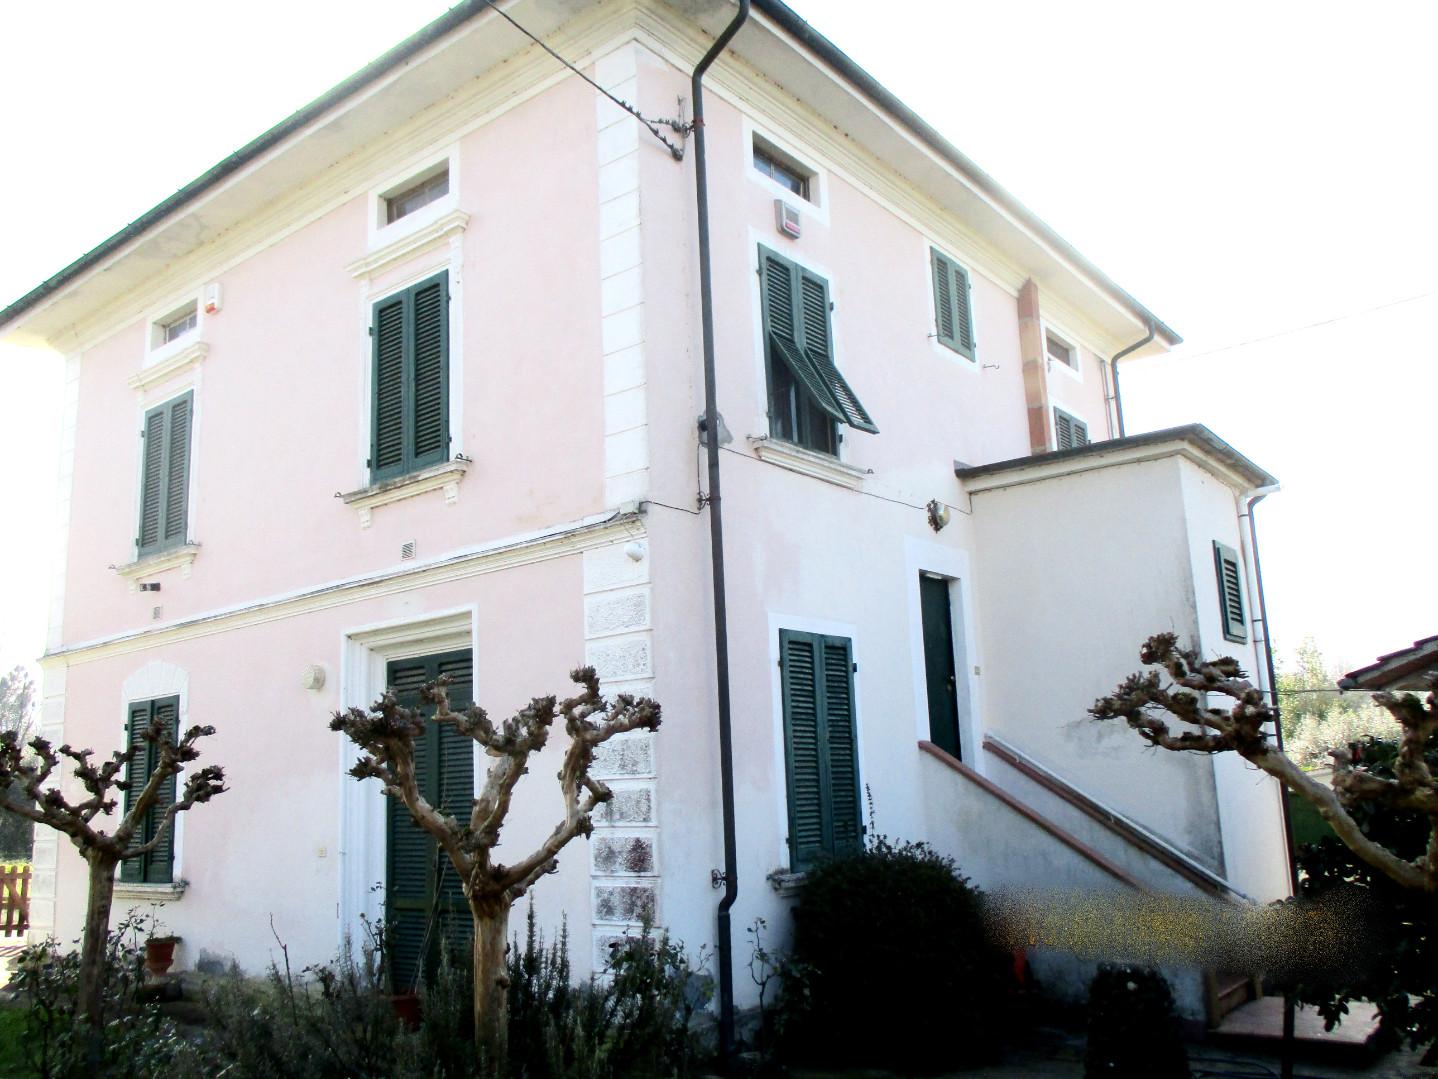 Villa a Castelfranco di Sotto